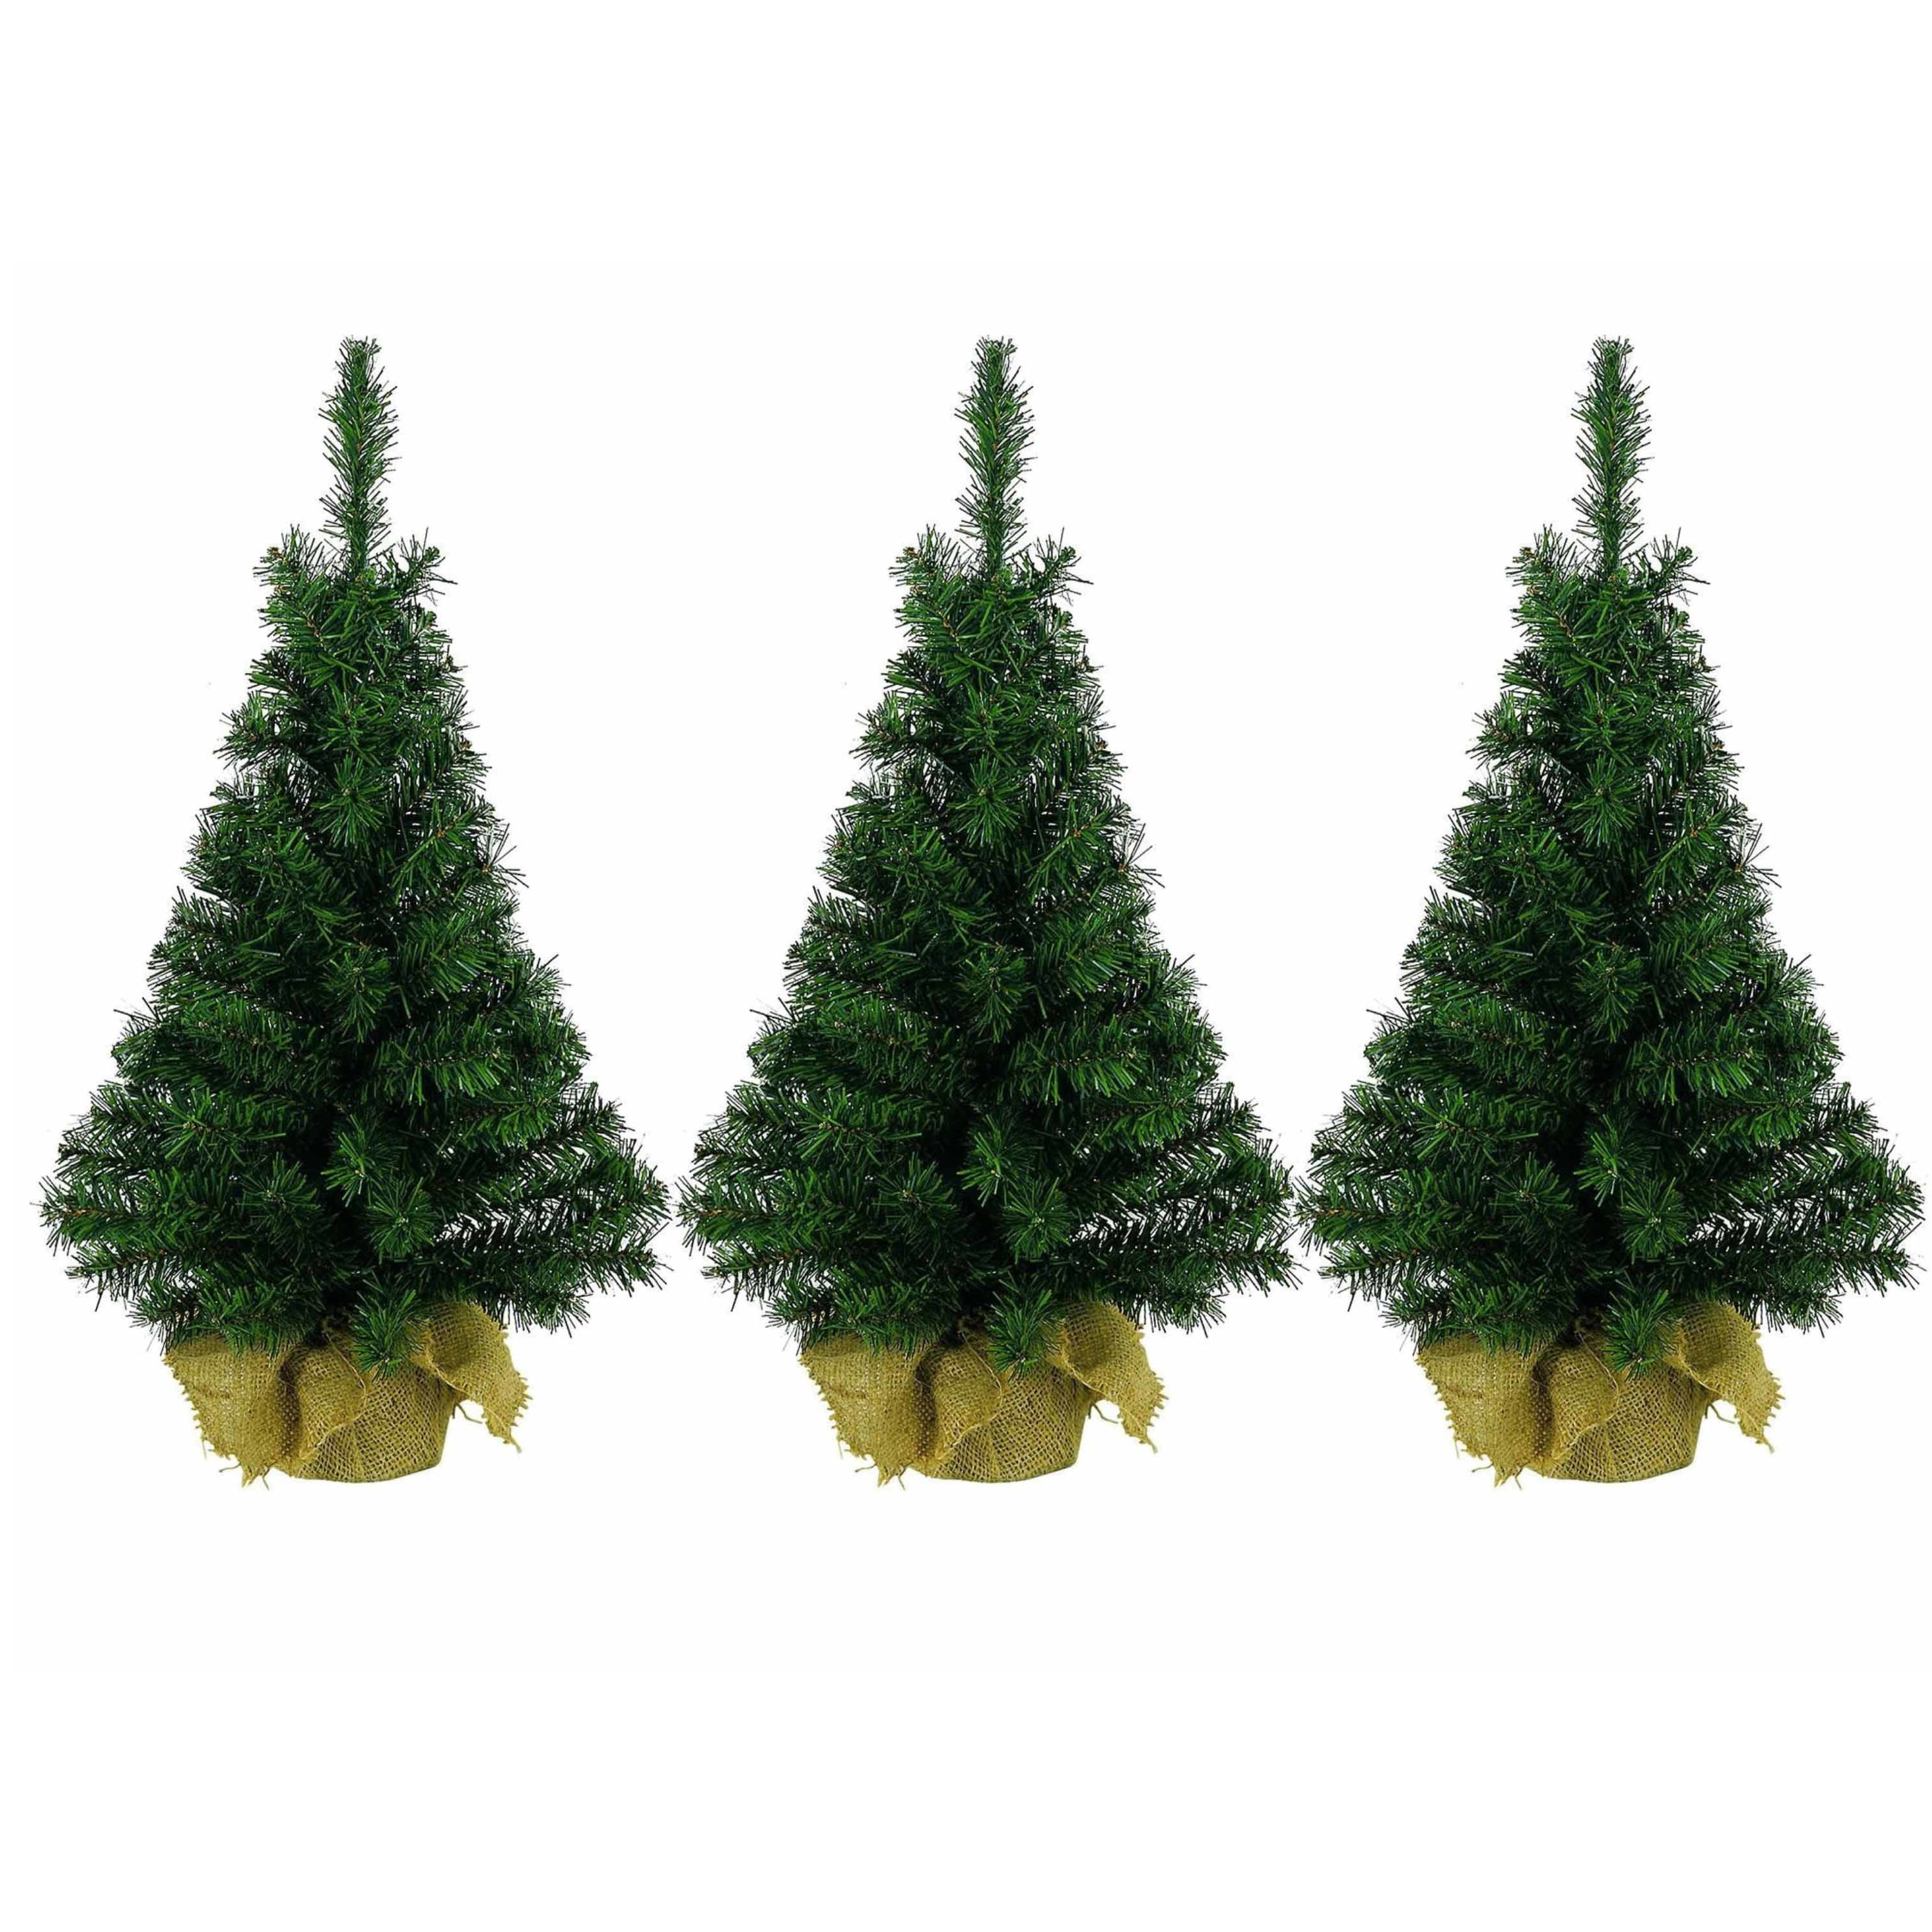 3x stuks kerst kerstbomen groen in jute zak 45 cm